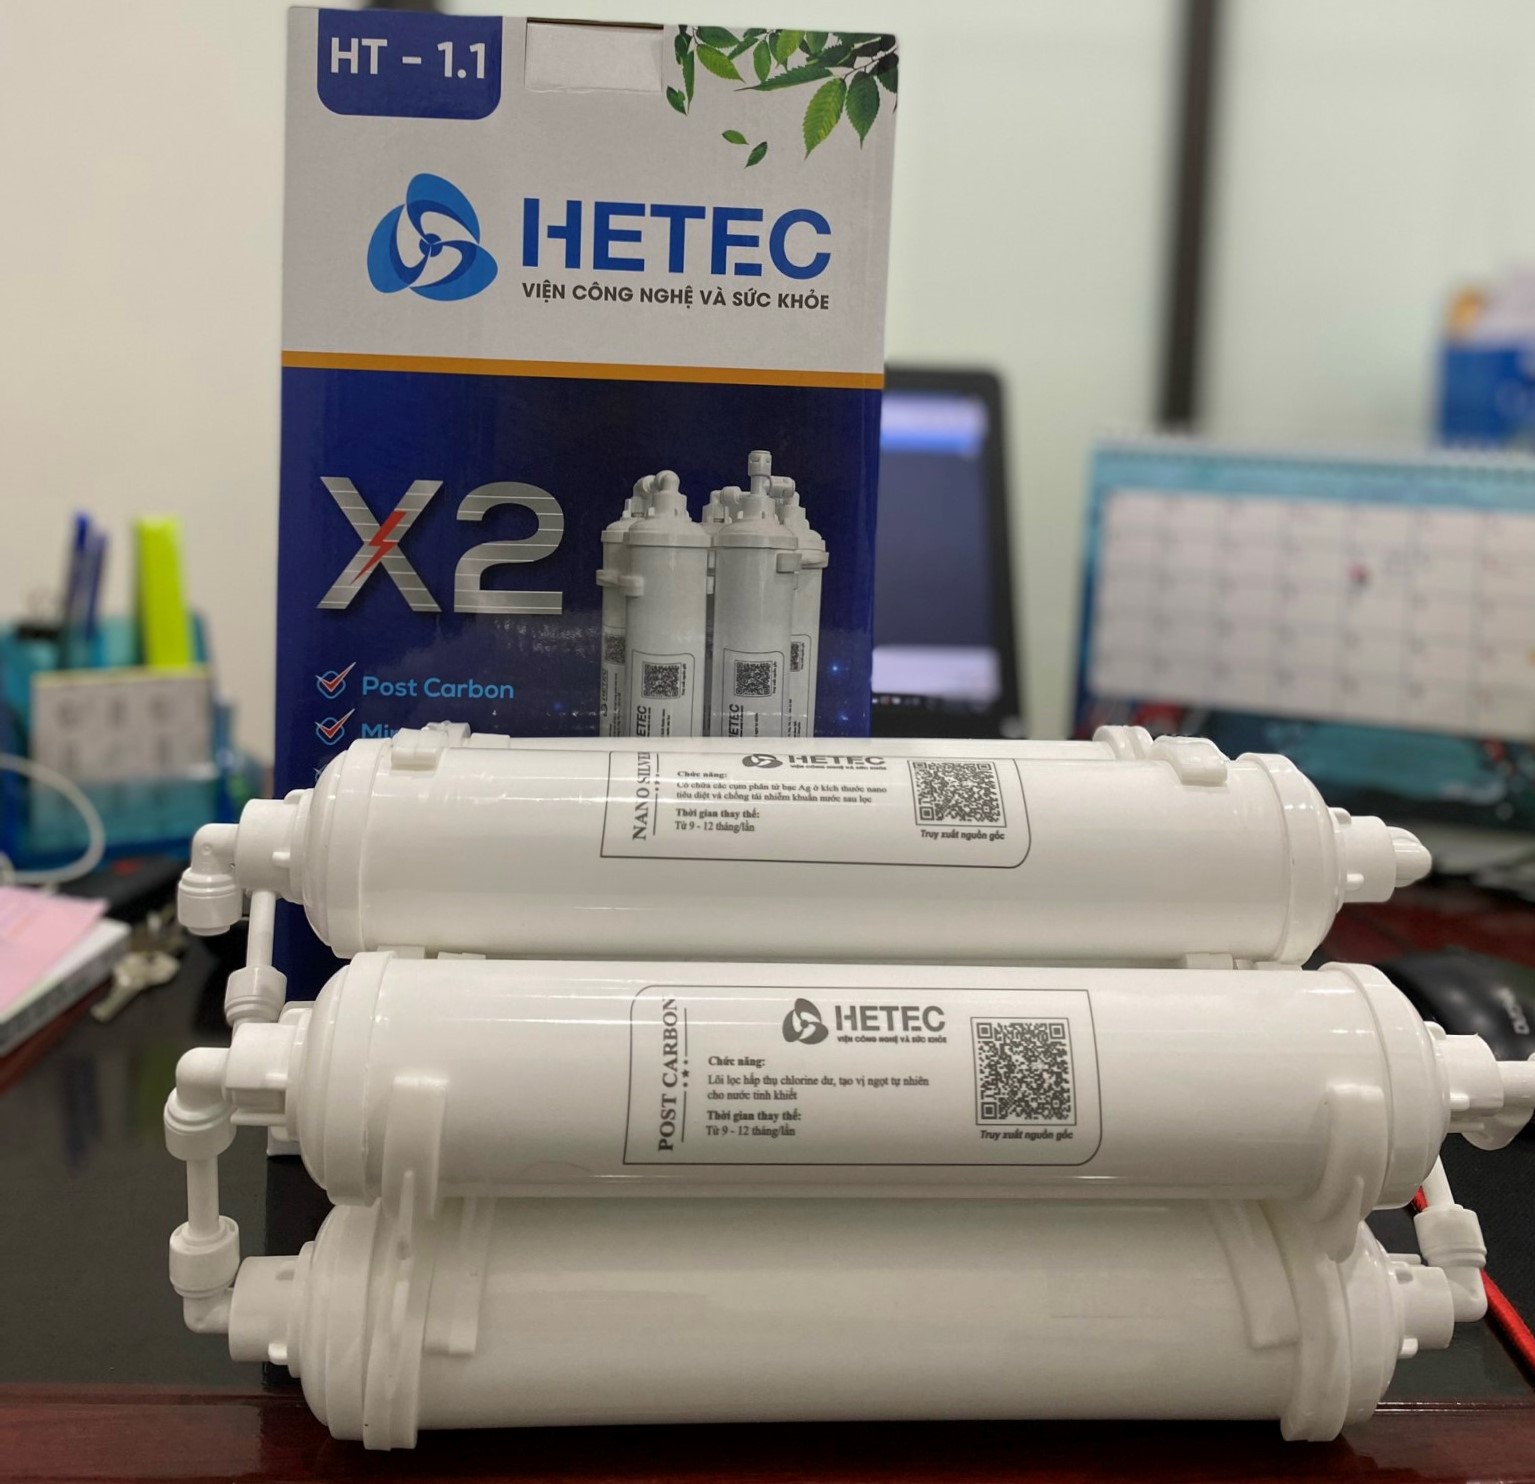 Bộ lõi lọc nước T33 tạo khoáng sau màng lọc nhãn hiệu HETEC